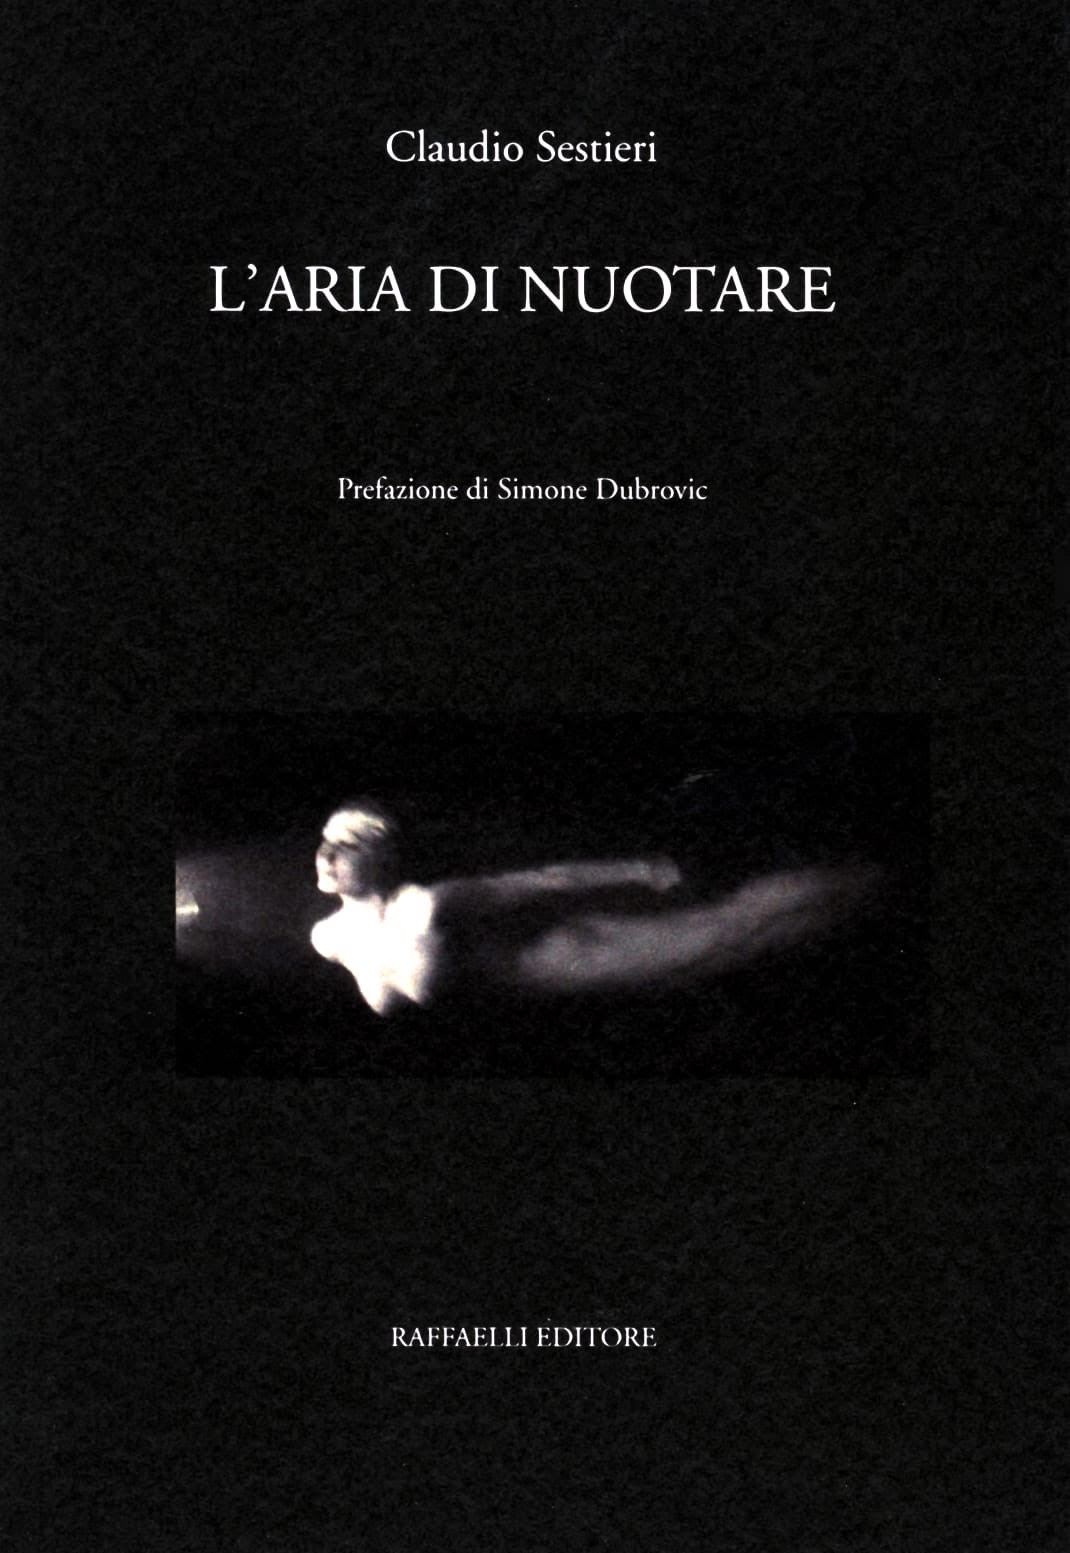 cover libro LARIA DI NUOTARE